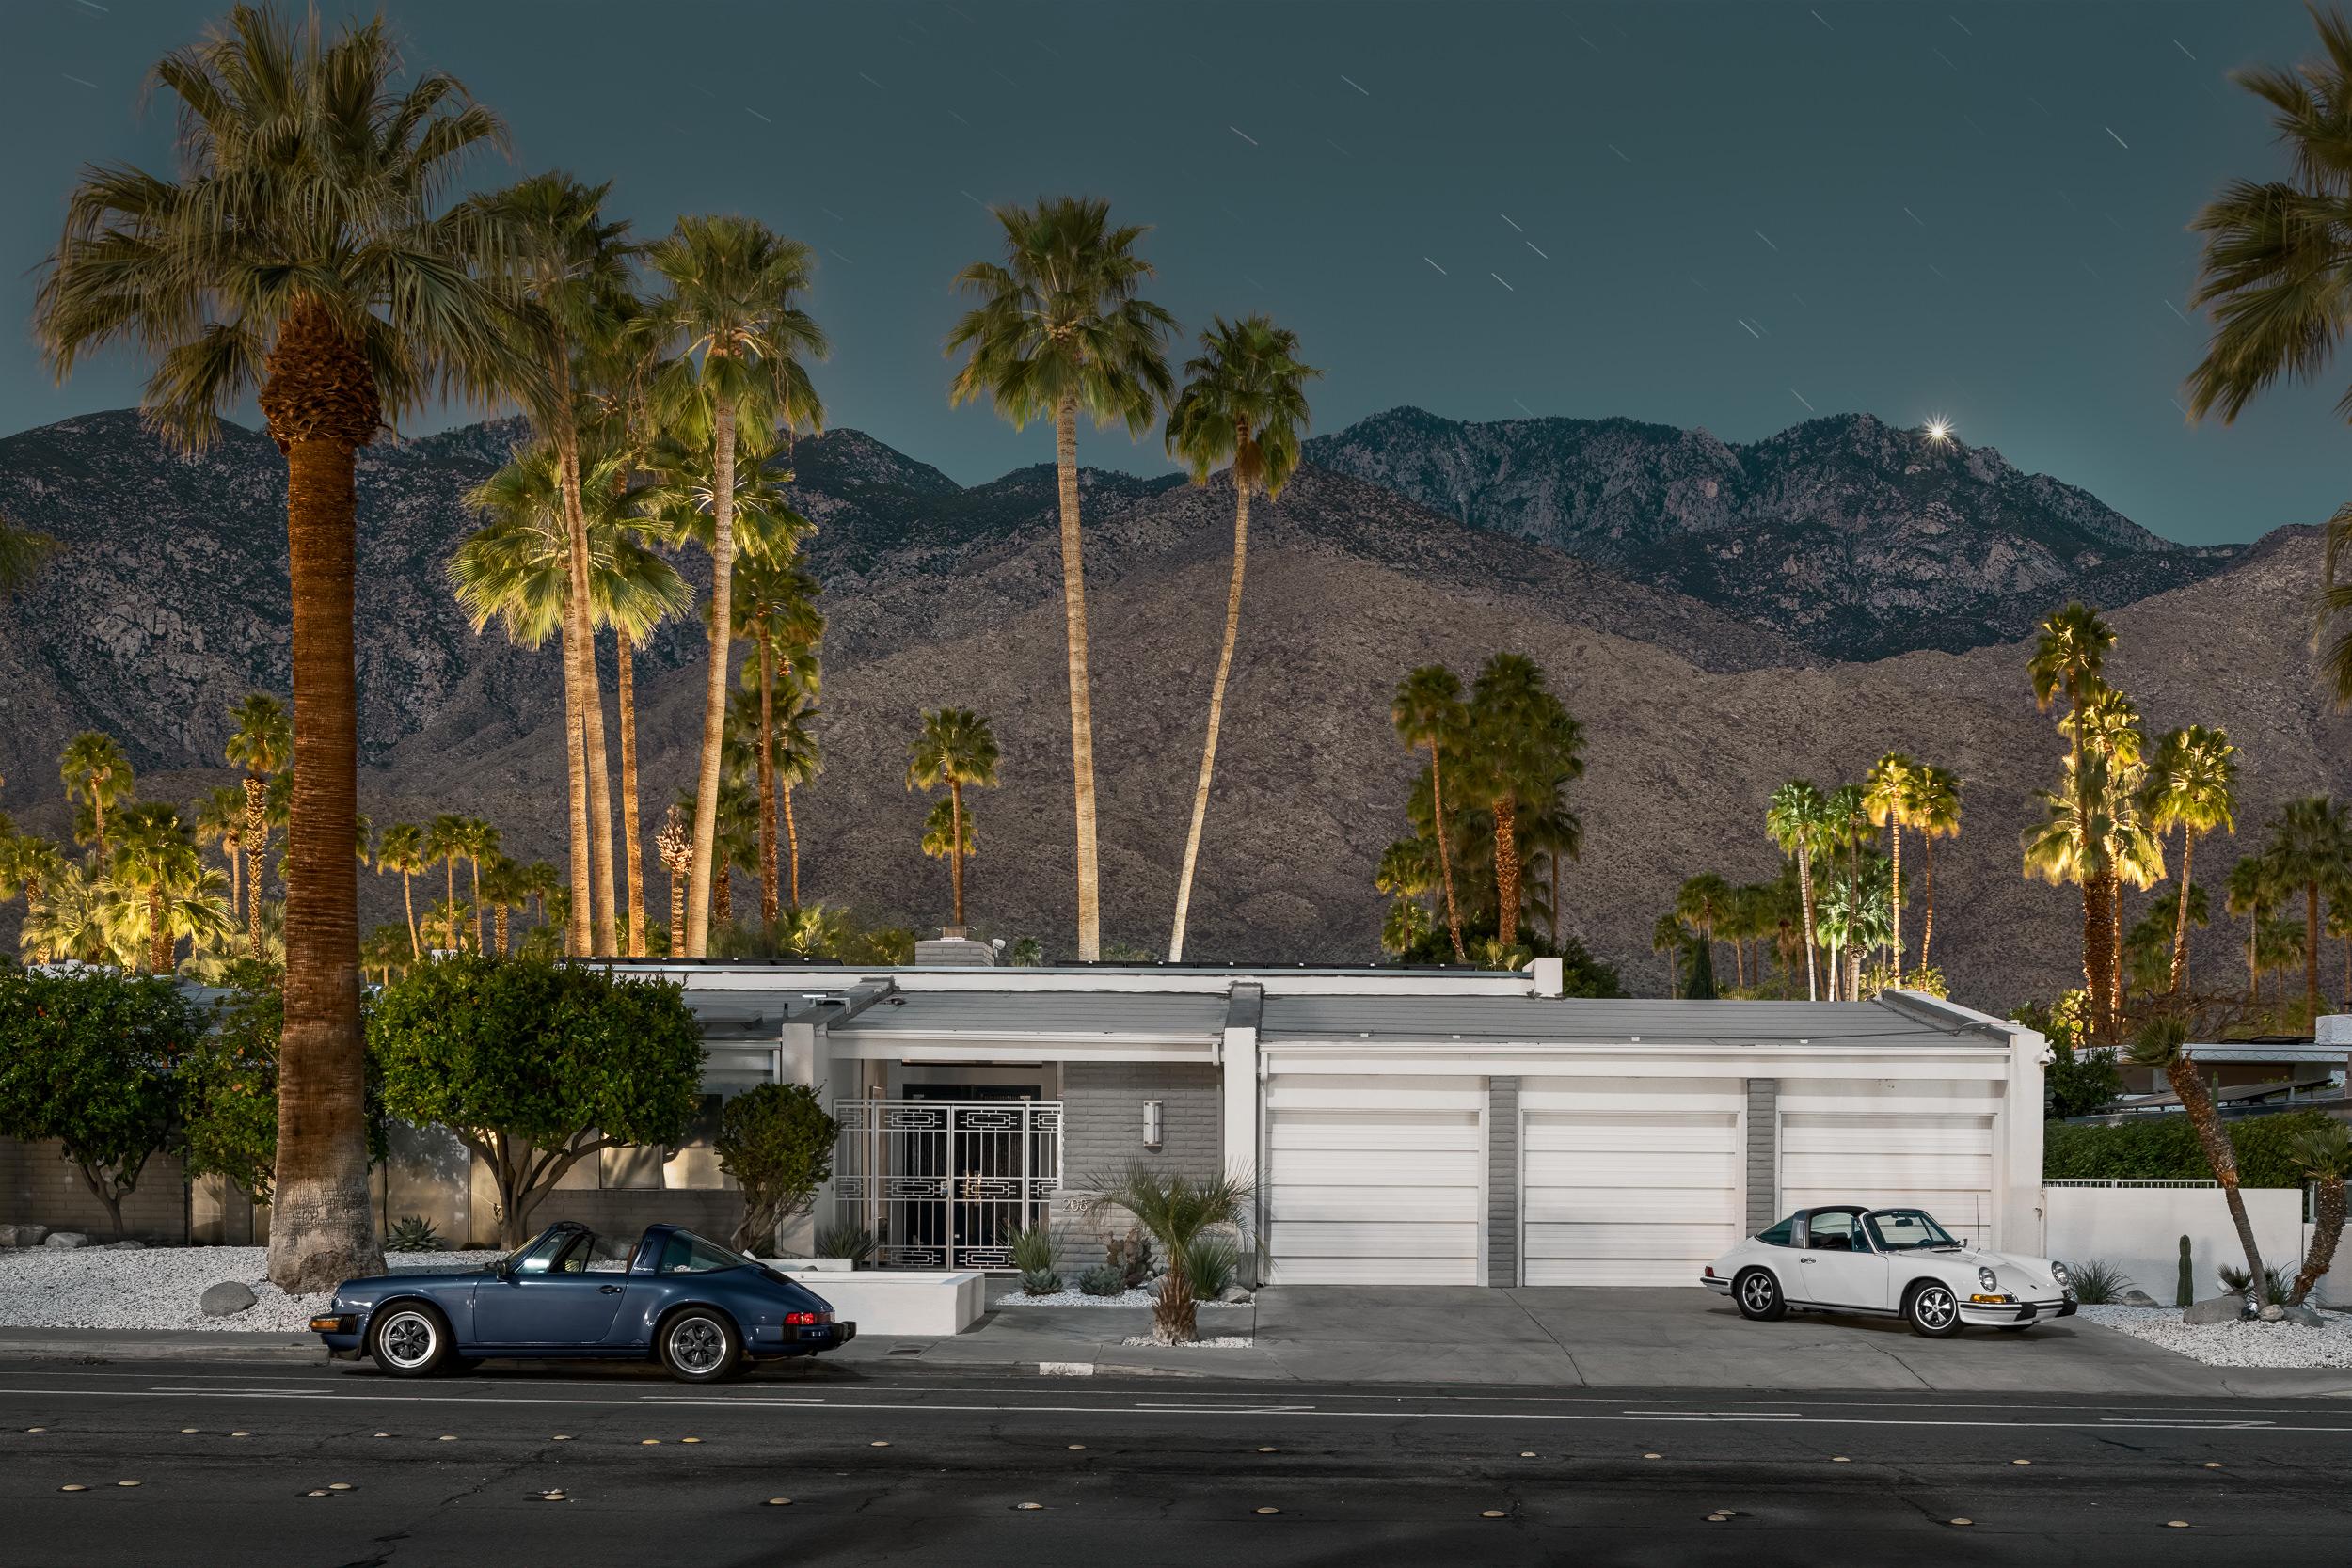 Limited Edition Serie von Classic ein paar Porsche Targa in Palm Springs Kalifornien. Mid Century Modern Design Architektur. Fotografie von Tom Blachford.

Was für Tom Blachford mit einer schicksalhaften Entdeckung in einer Nacht begann, hat sich zu